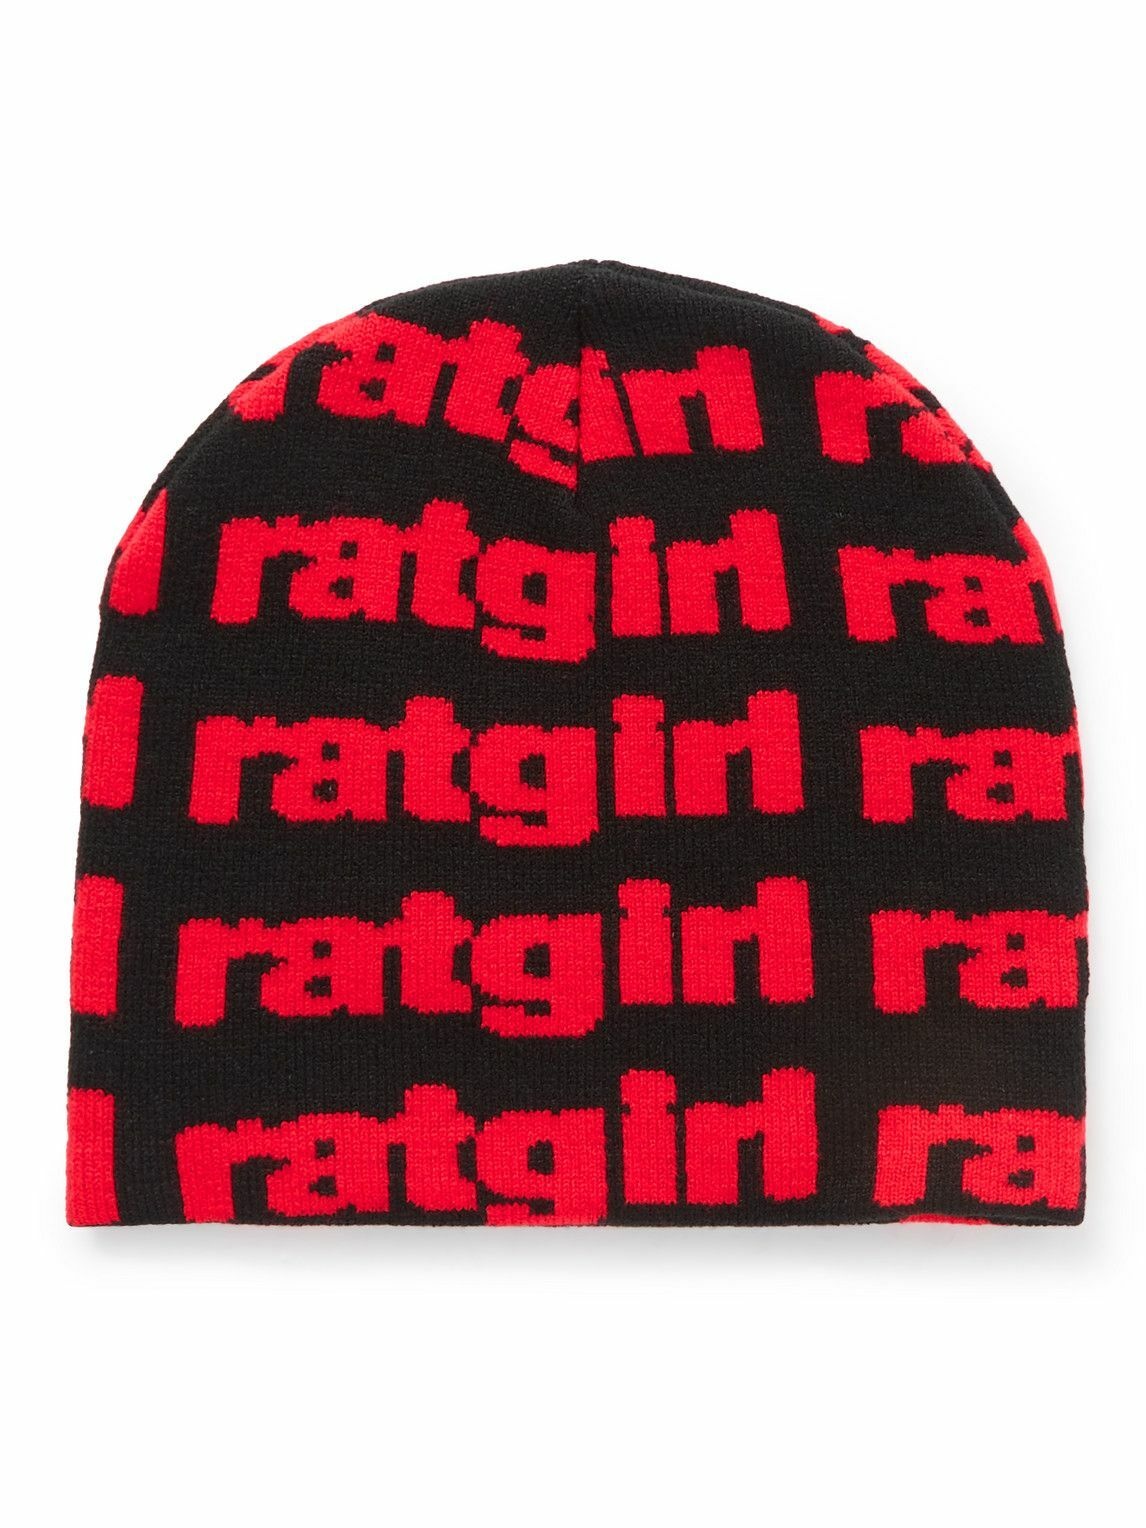 Stray Rats - Ratgirl Jacquard-Knit Beanie